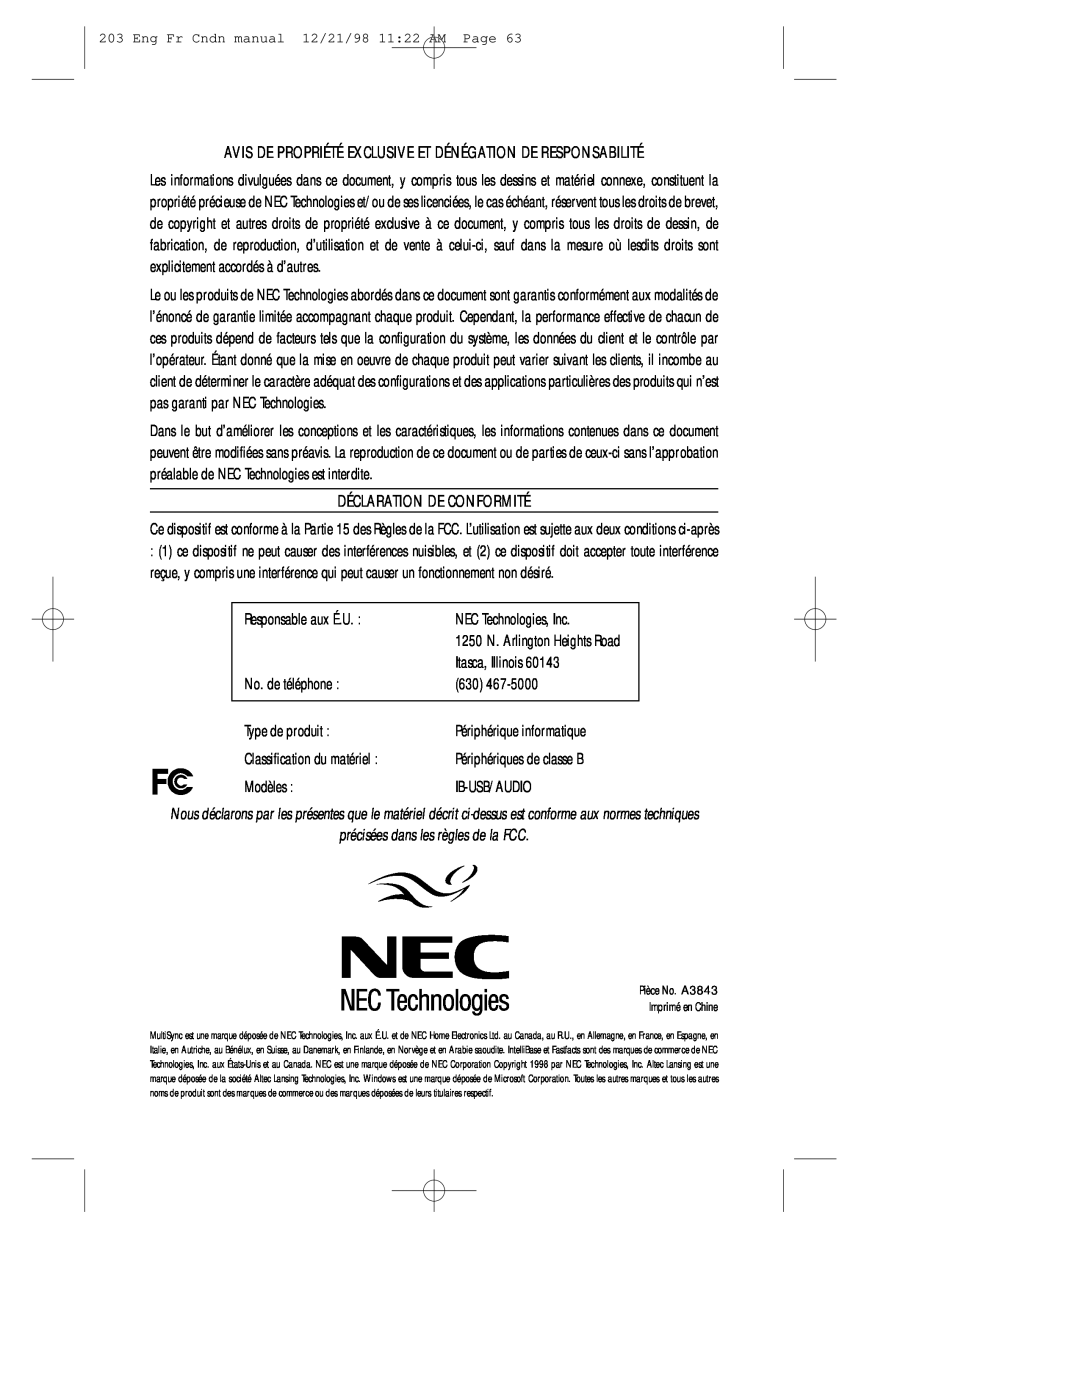 NEC USB Responsable aux É.U, NEC Technologies, Inc, Itasca, Illinois, No. de téléphone, Type de produit, Modèles 